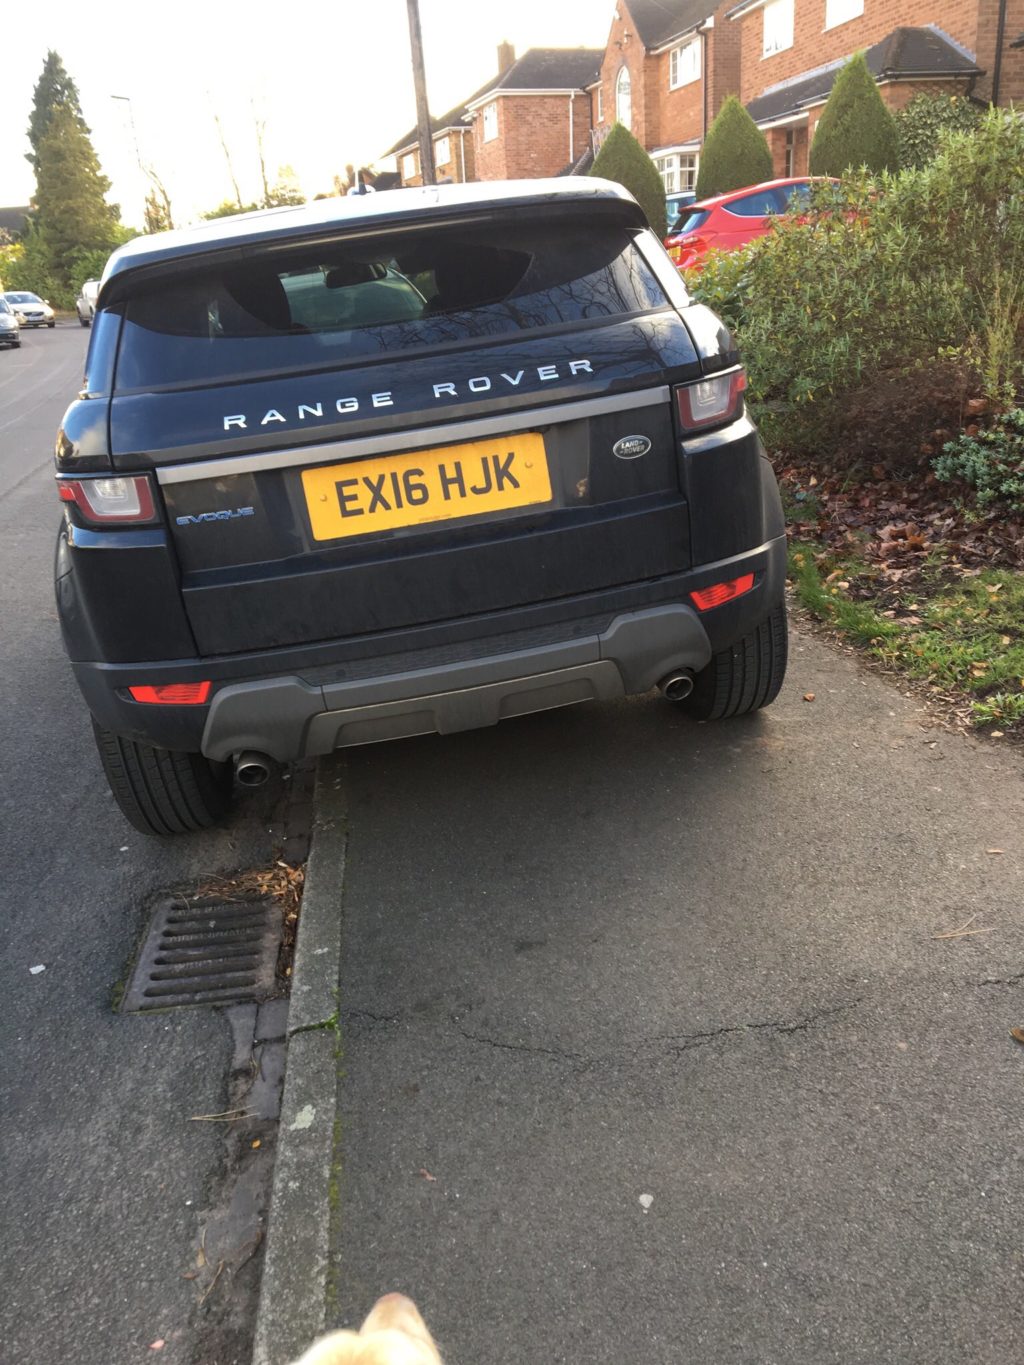 EX16 HJK displaying Selfish Parking